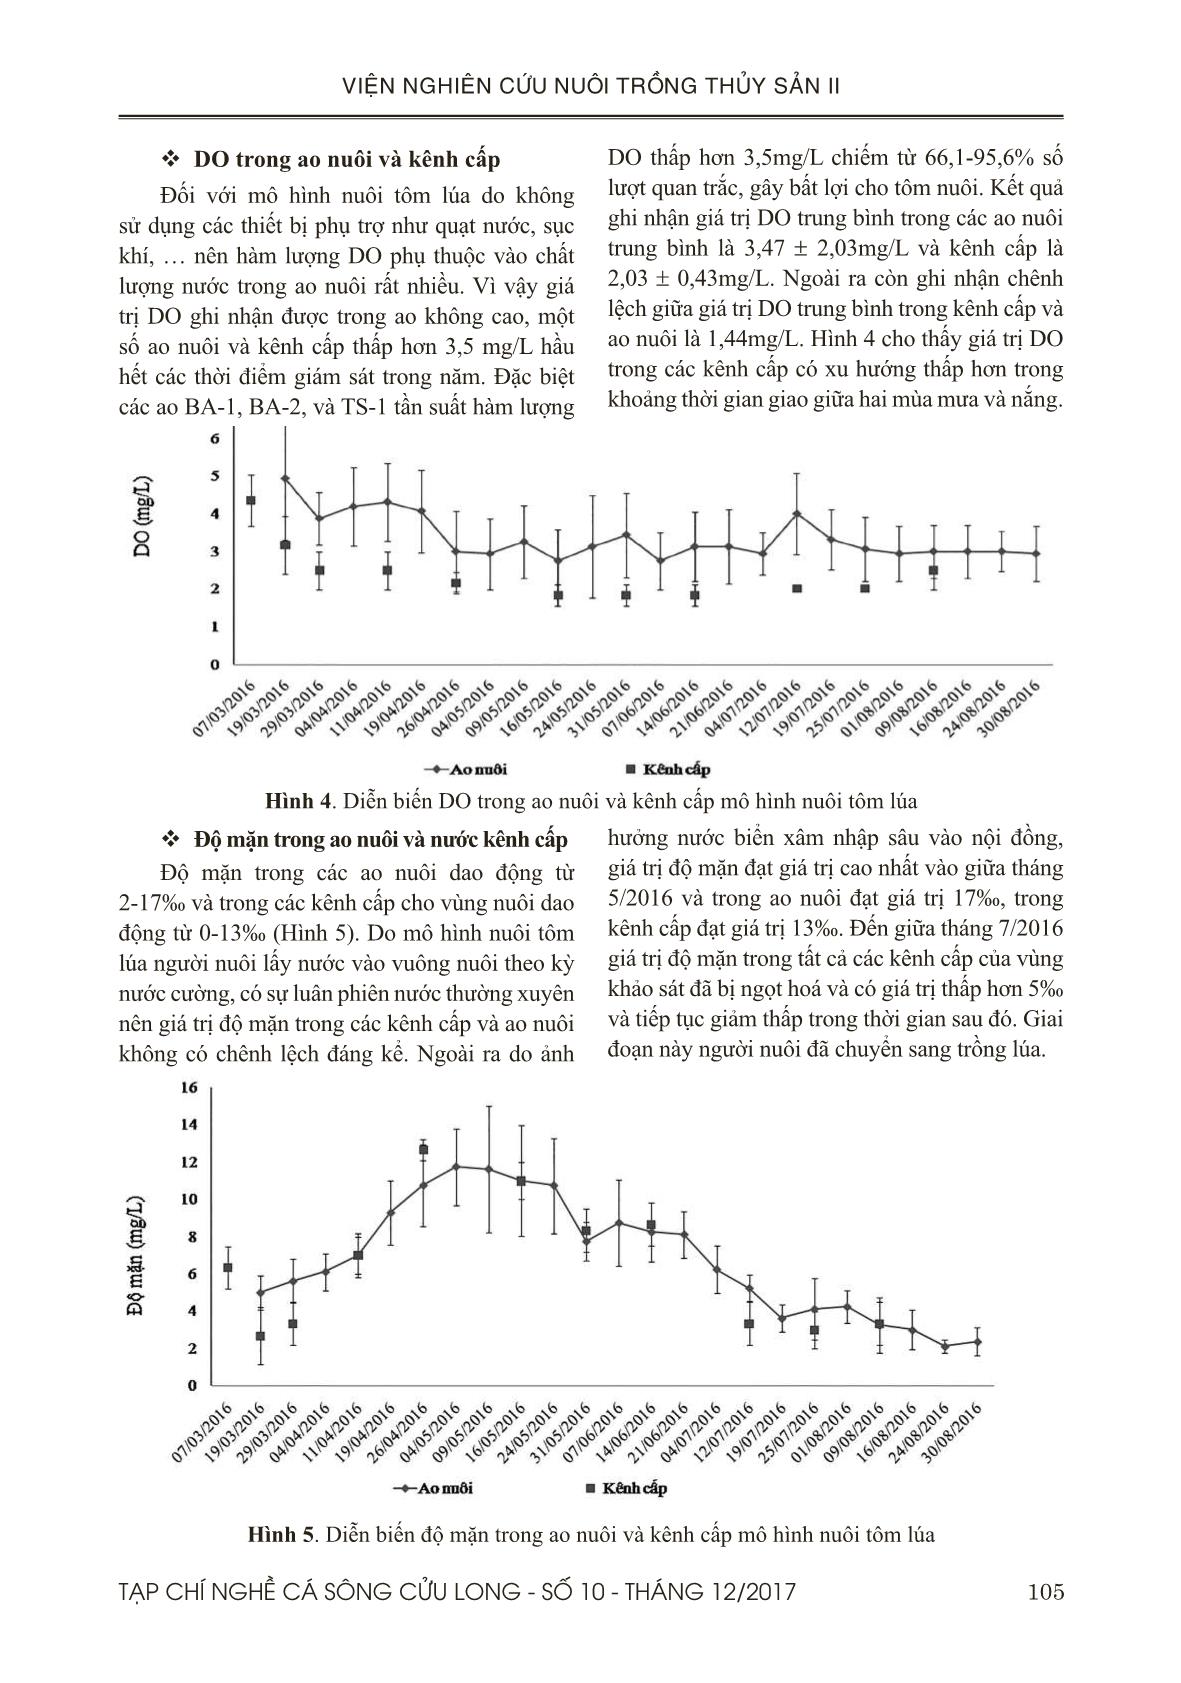 Đánh giá diễn biến chất lượng nước và mầm bệnh trên tôm nuôi mô hình nuôi luân canh tôm lúa trang 5